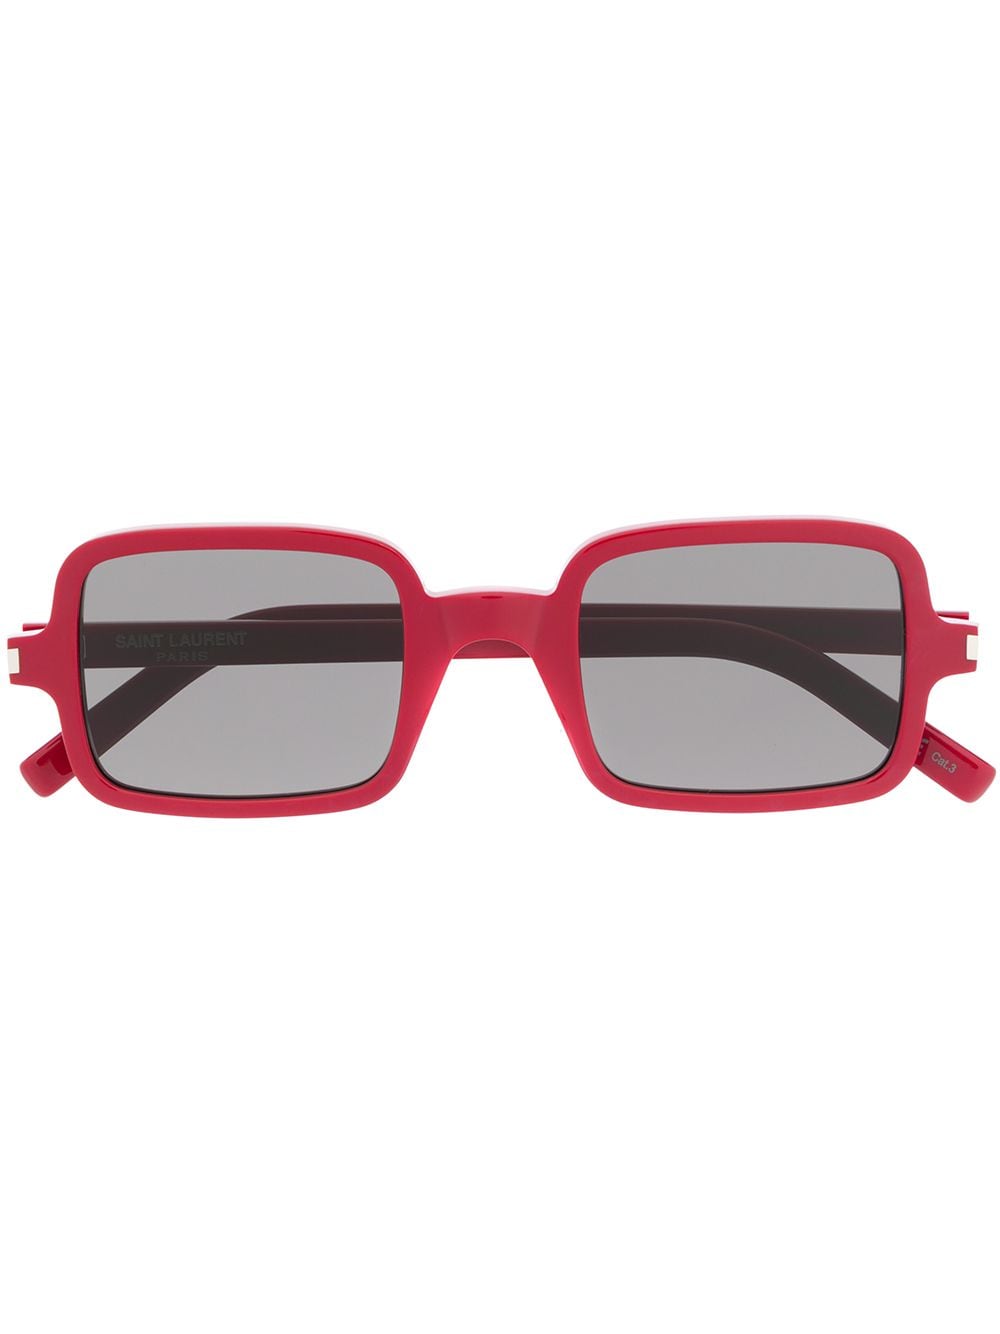 фото Saint Laurent Eyewear солнцезащитные очки SL 332 в квадратной оправе